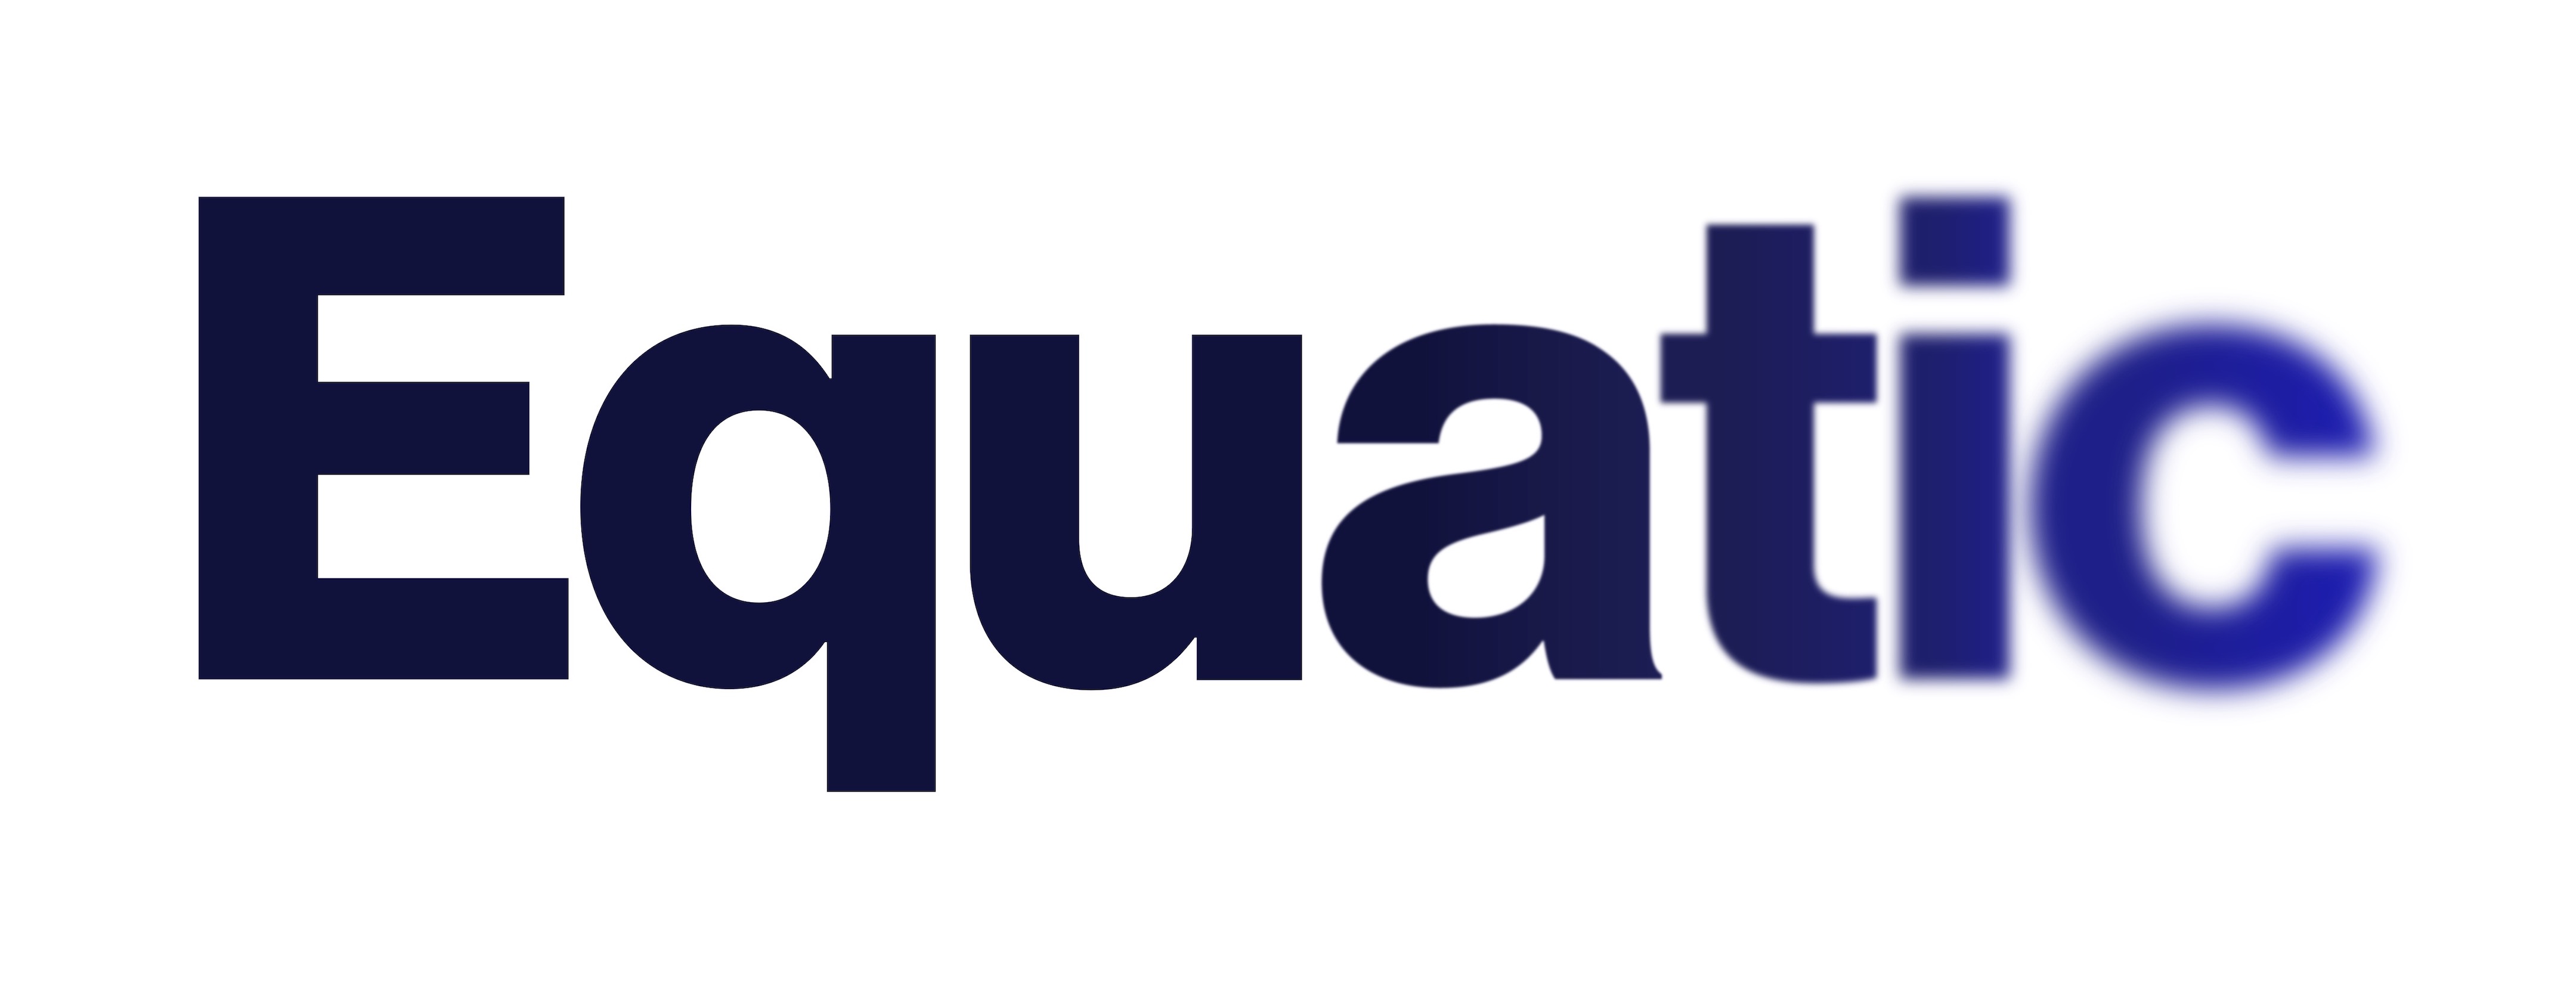 Equatic_logo_RGB_Gradient (1).jpg